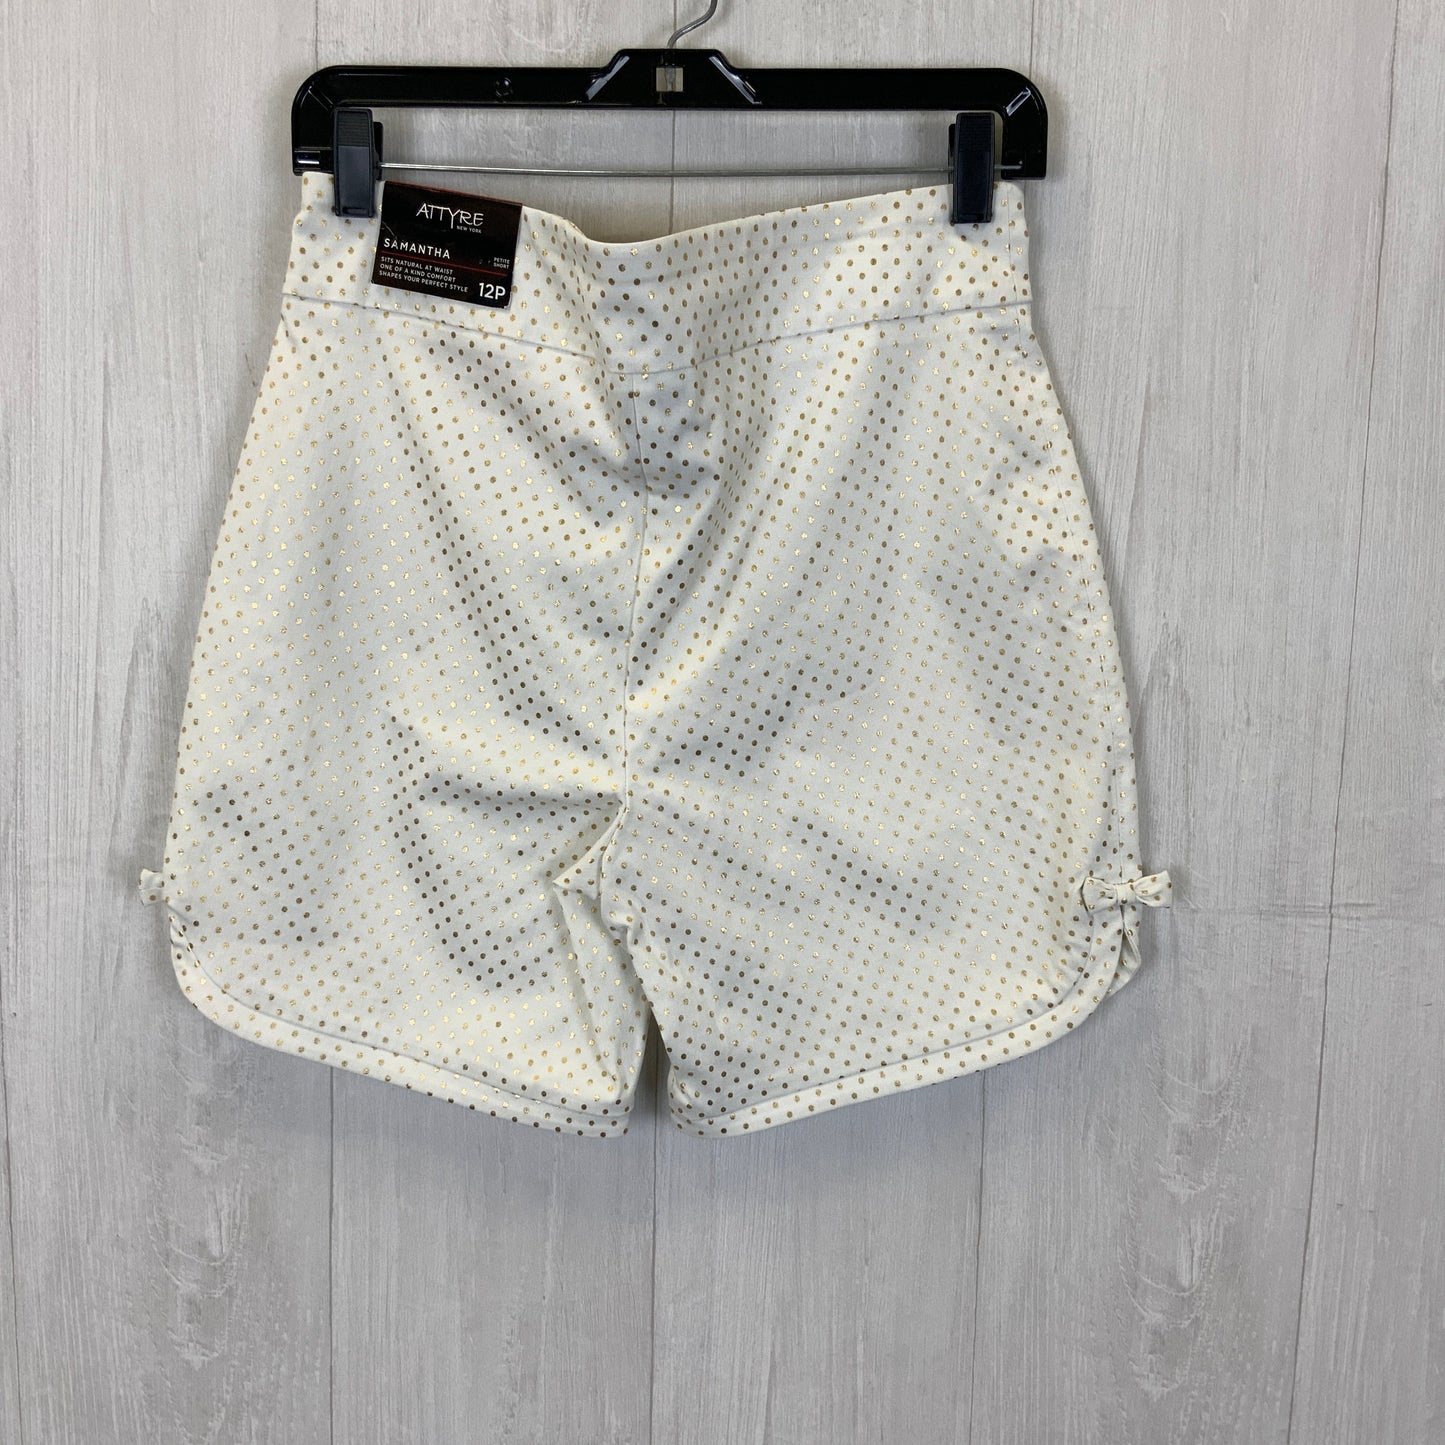 White Shorts Attyre, Size 12petite